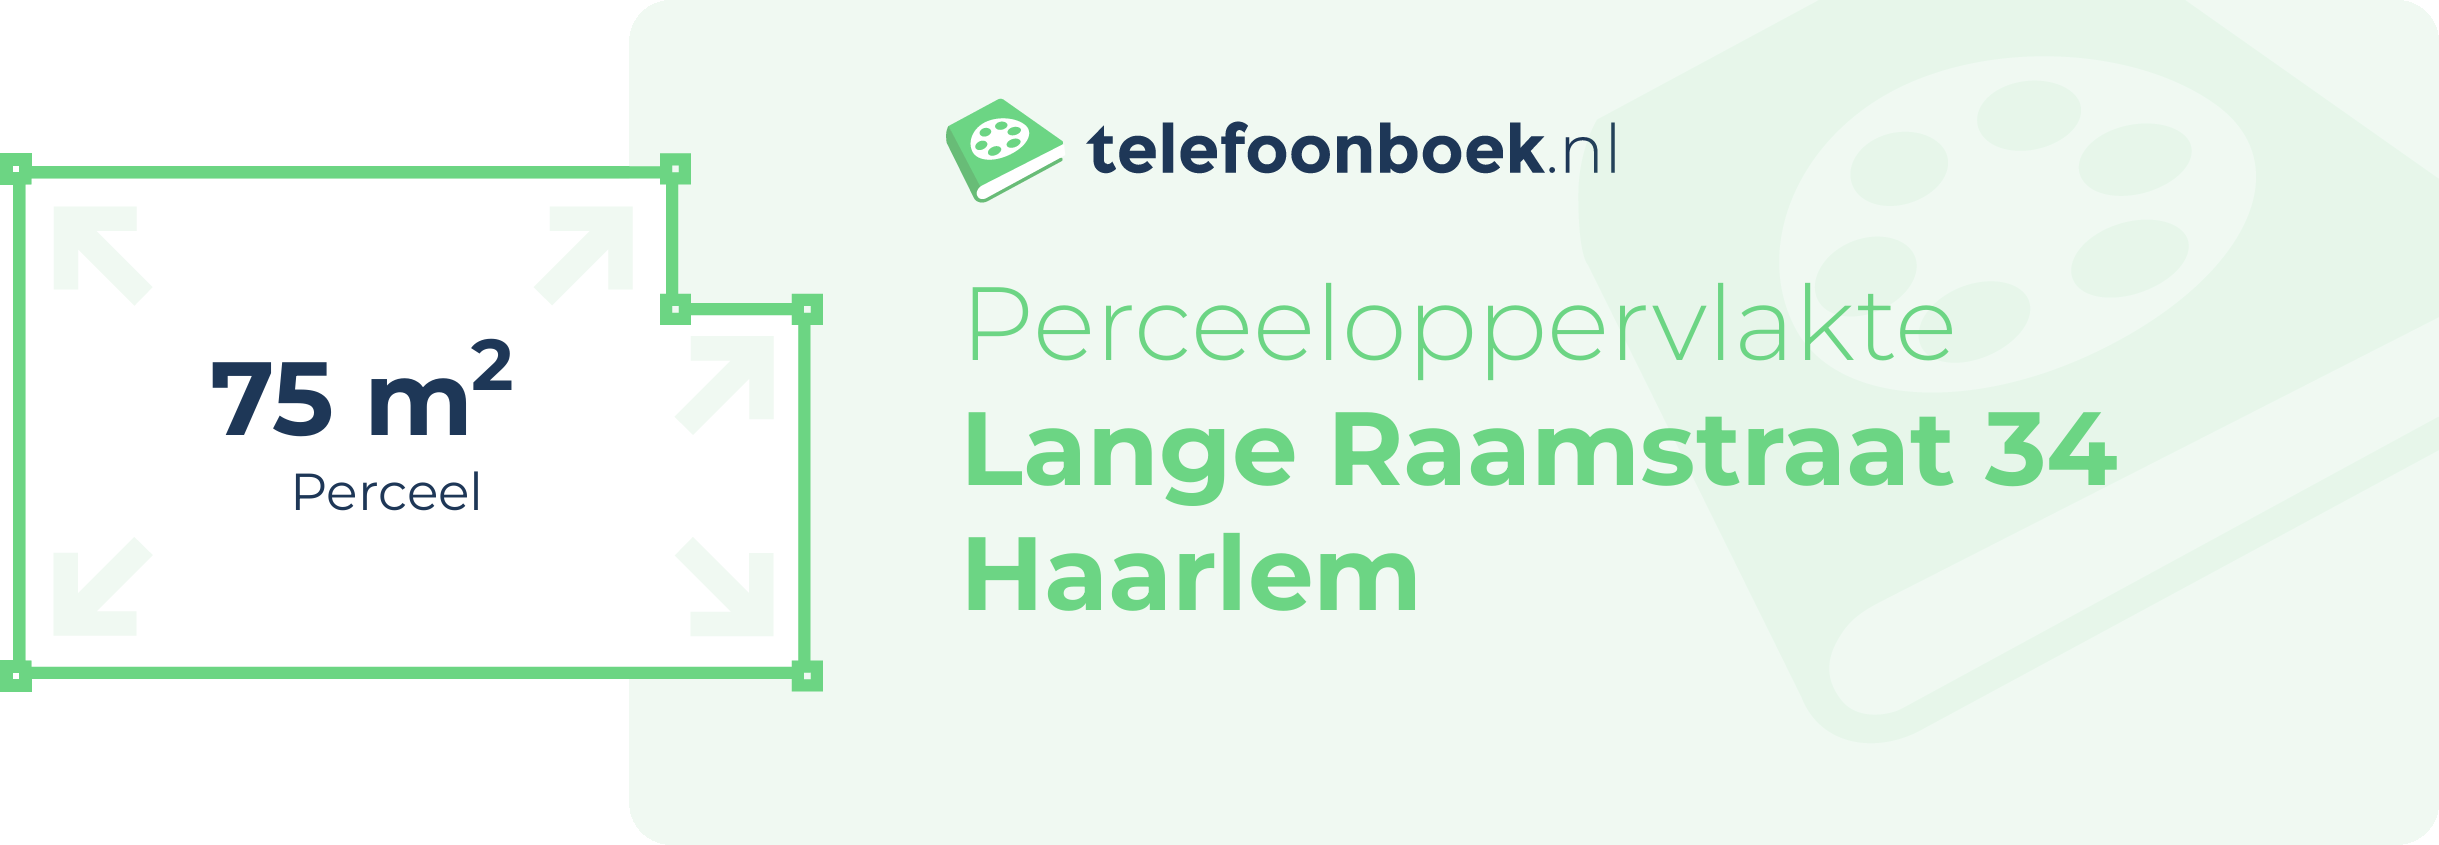 Perceeloppervlakte Lange Raamstraat 34 Haarlem